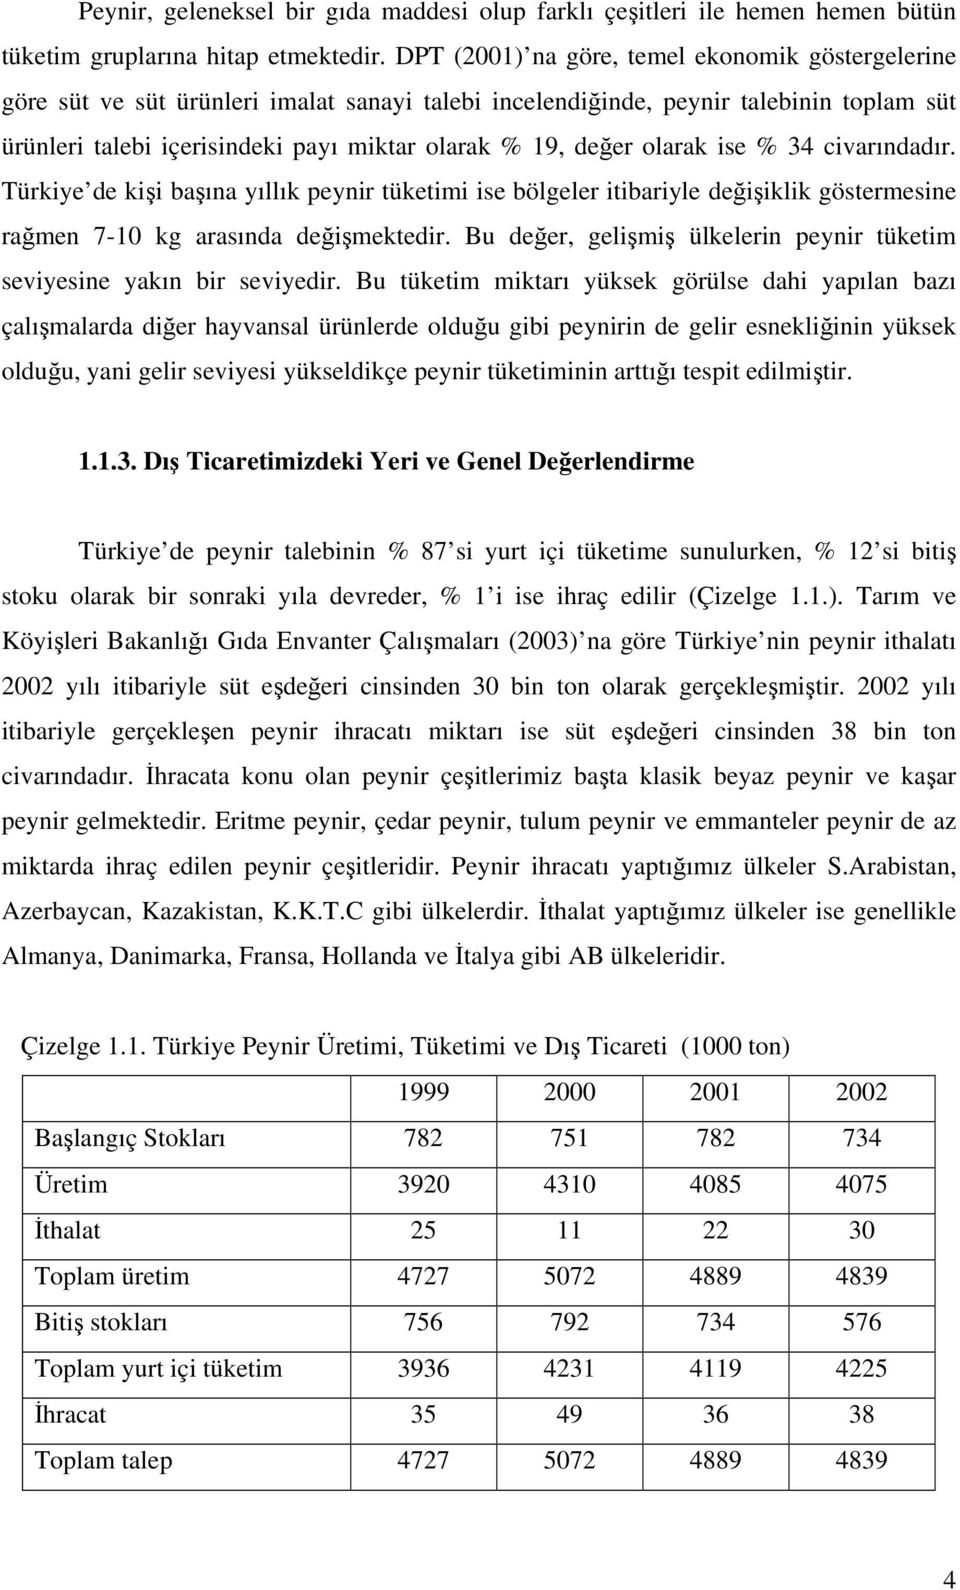 olarak ise % 34 civarındadır. Türkiye de kişi başına yıllık peynir tüketimi ise bölgeler itibariyle değişiklik göstermesine rağmen 7-10 kg arasında değişmektedir.